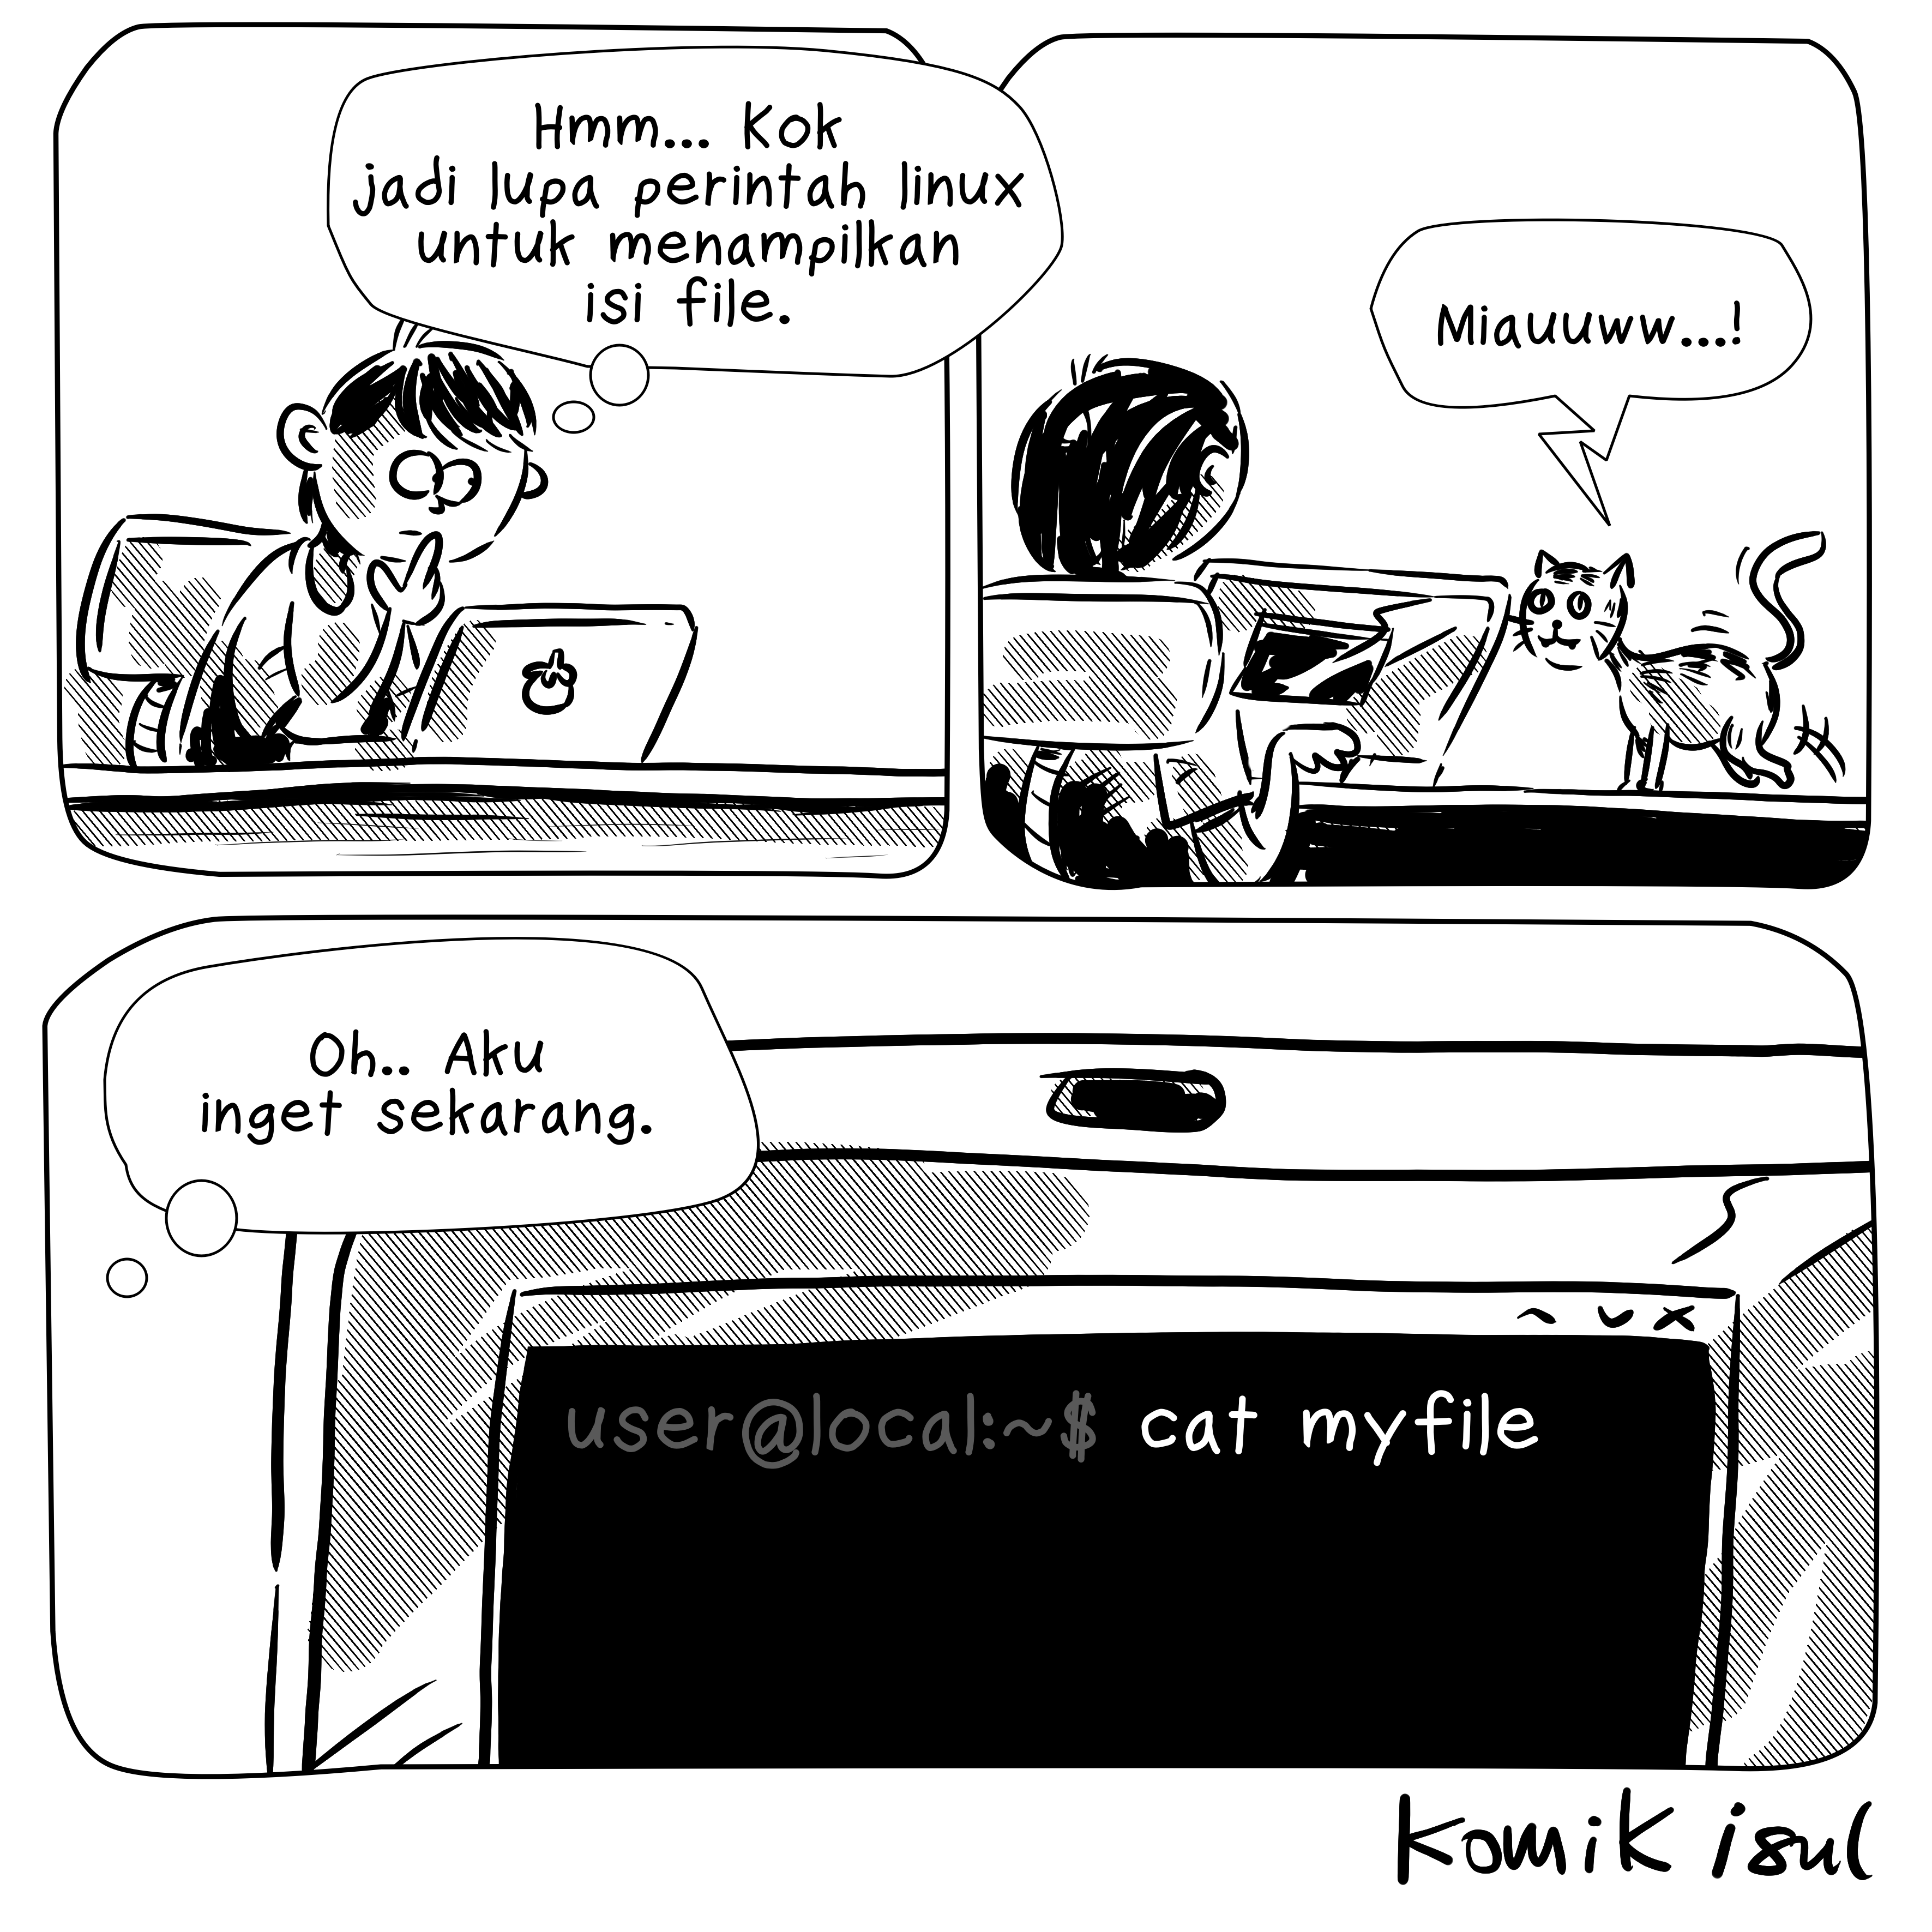 cat command